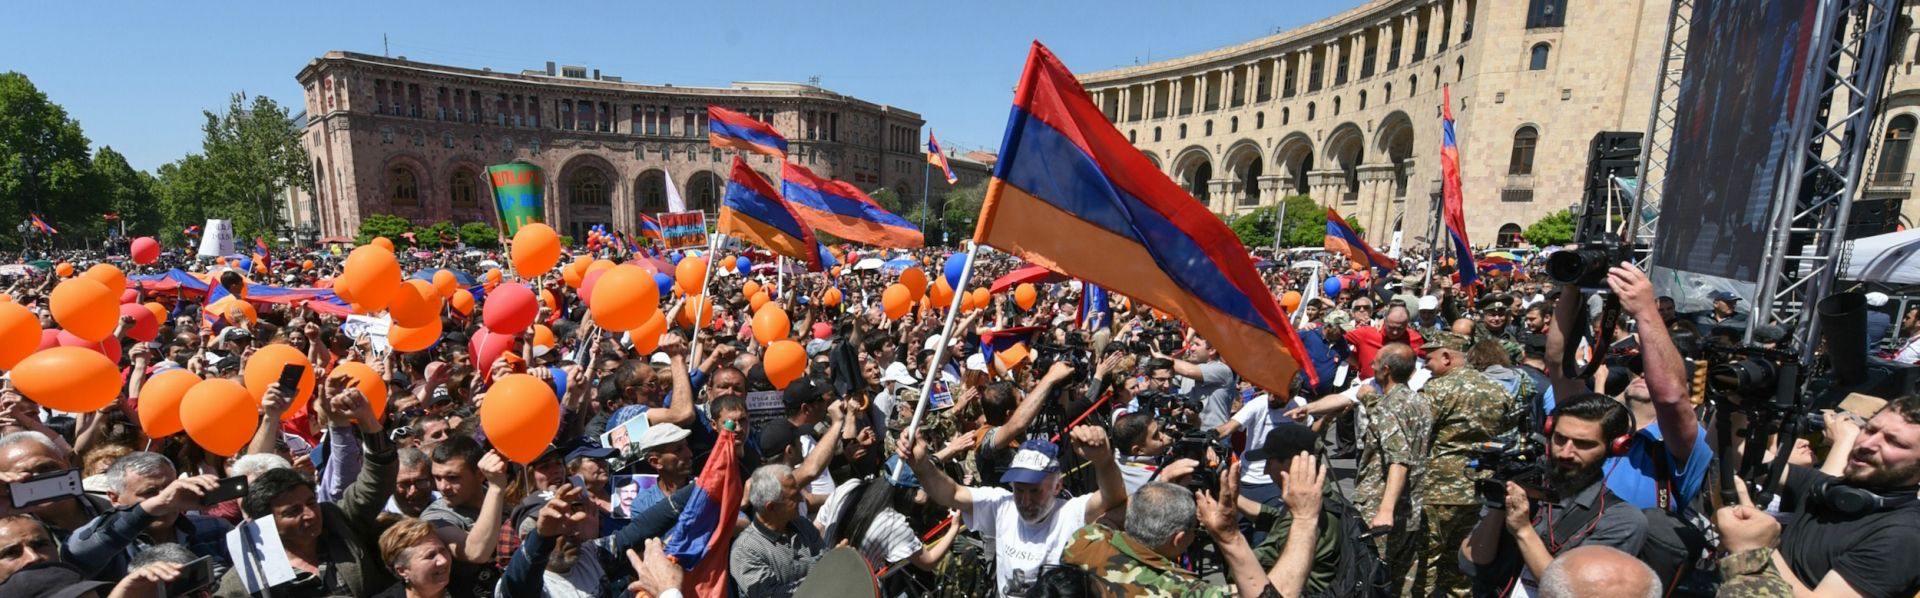 Население армении на сегодня. Бархатная революция в Армении 2018. Ереван население. День гражданина в Армении. Картинки день граждан в Армении картинки.